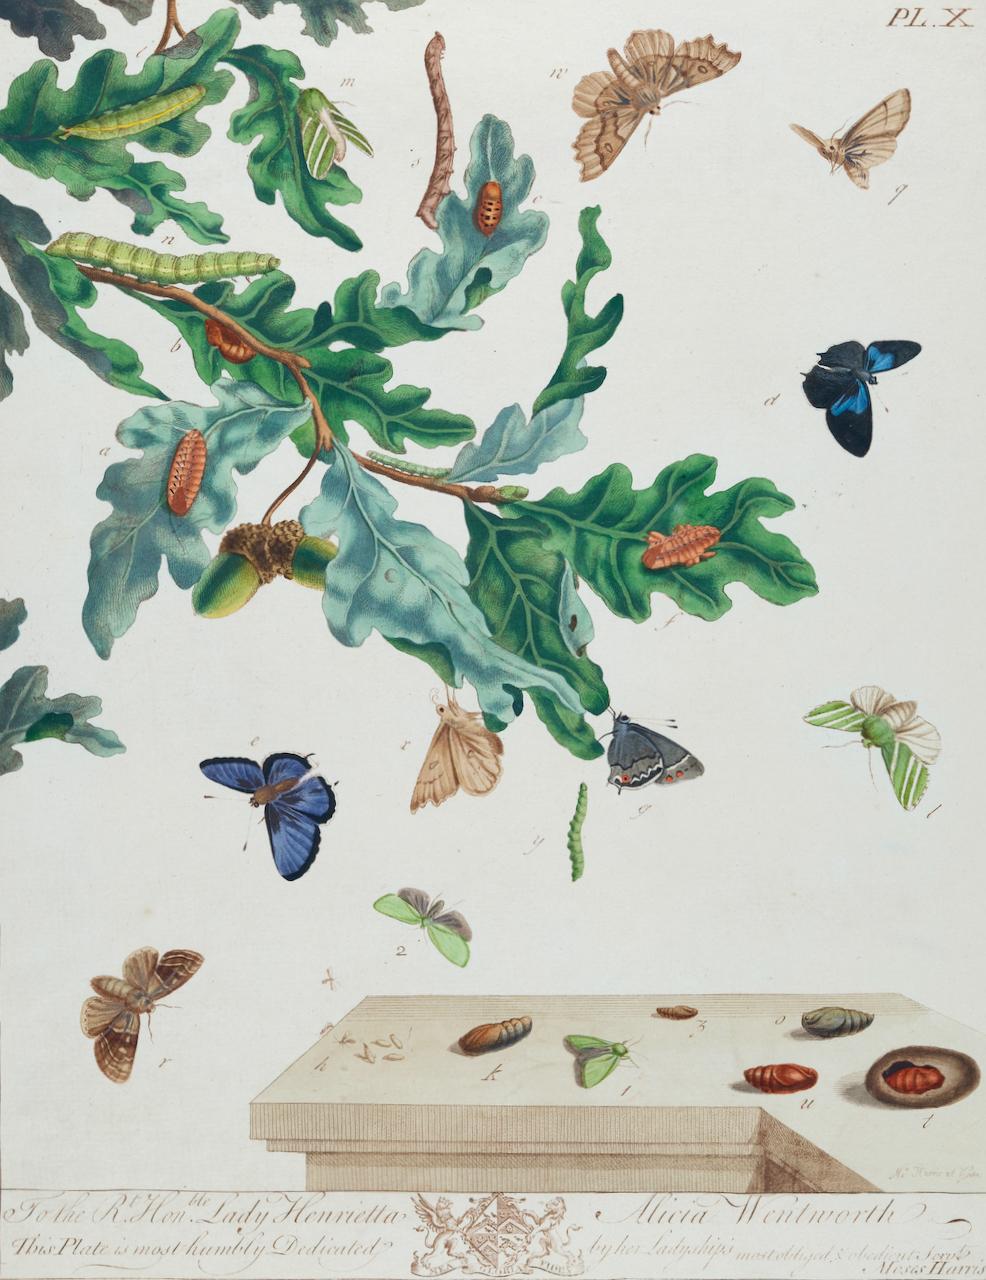 Papillons et papillons de nuit : A 1ère éd. Gravure colorée à la main du 18e siècle par M. Harris - Print de Moses Harris